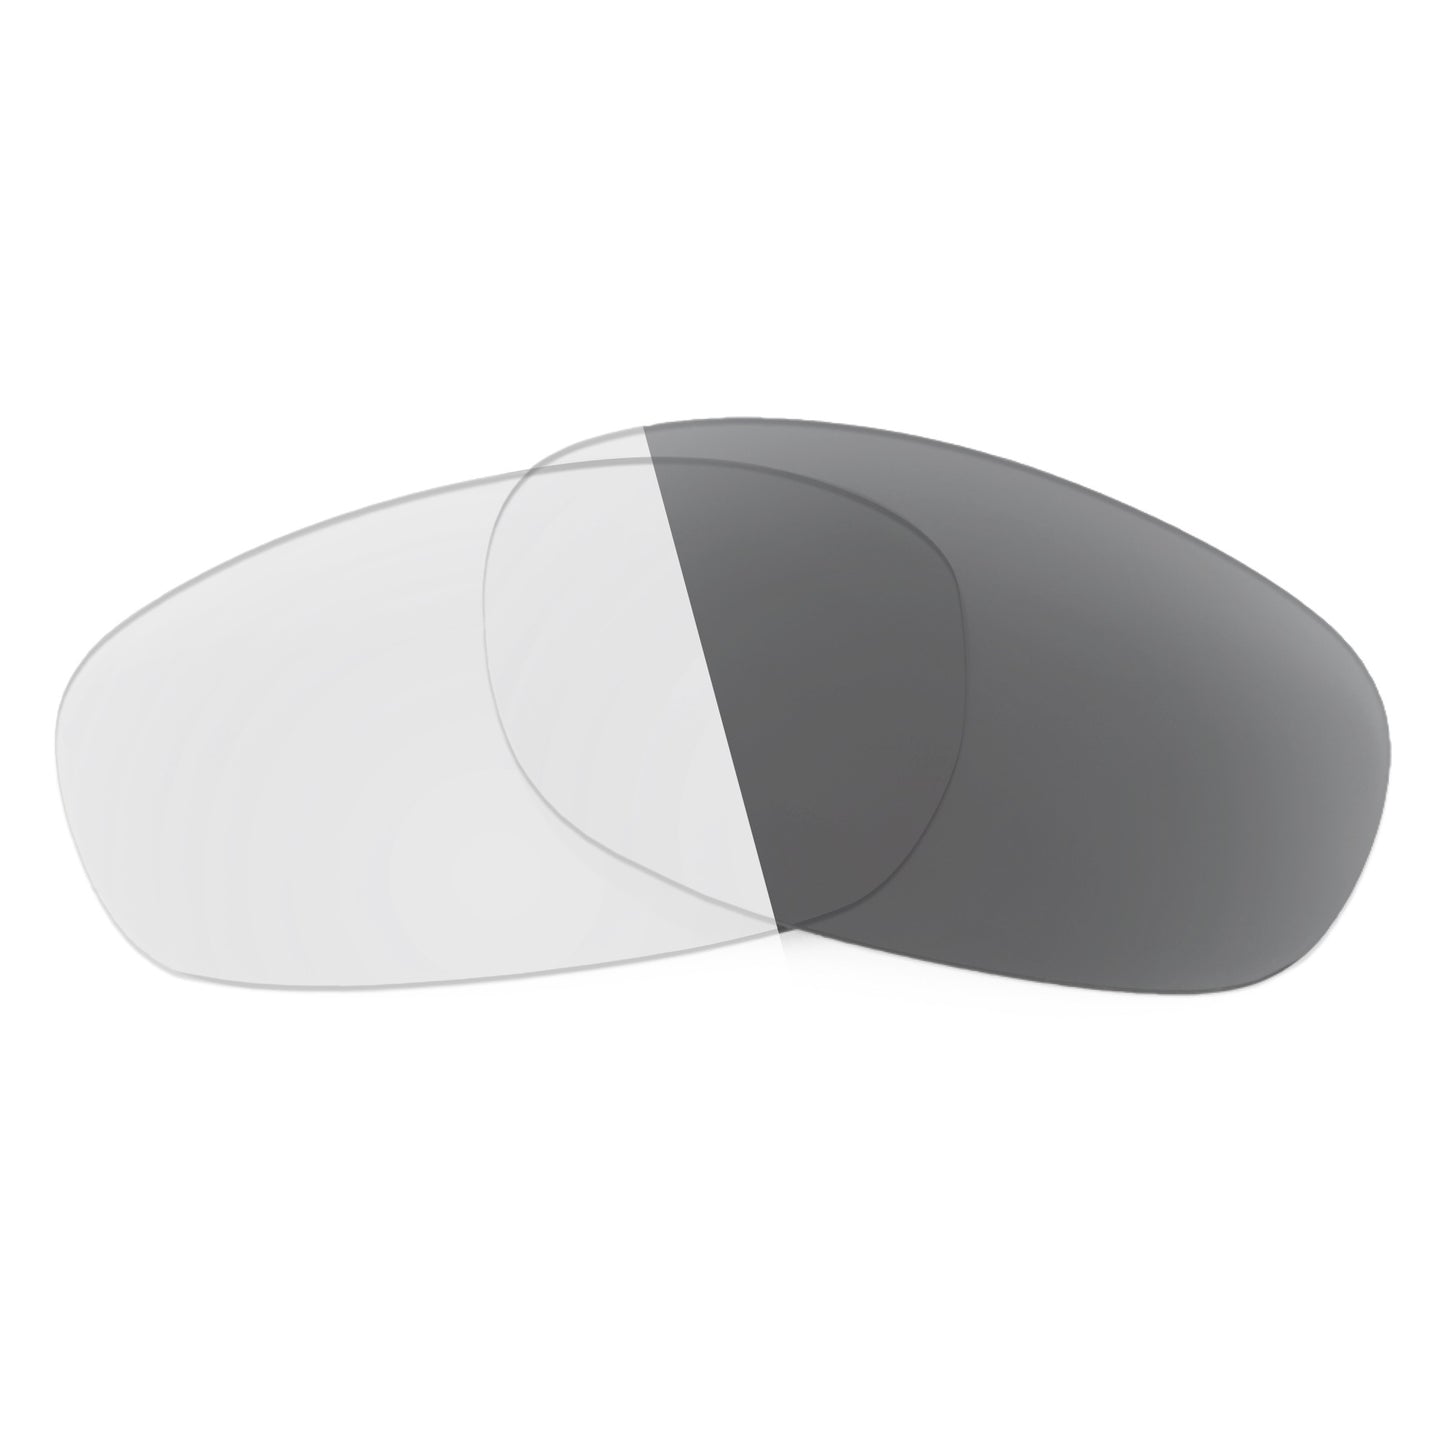 Revant replacement lenses for Oakley Whisker (2020) Non-Polarized Adapt Gray Photochromic